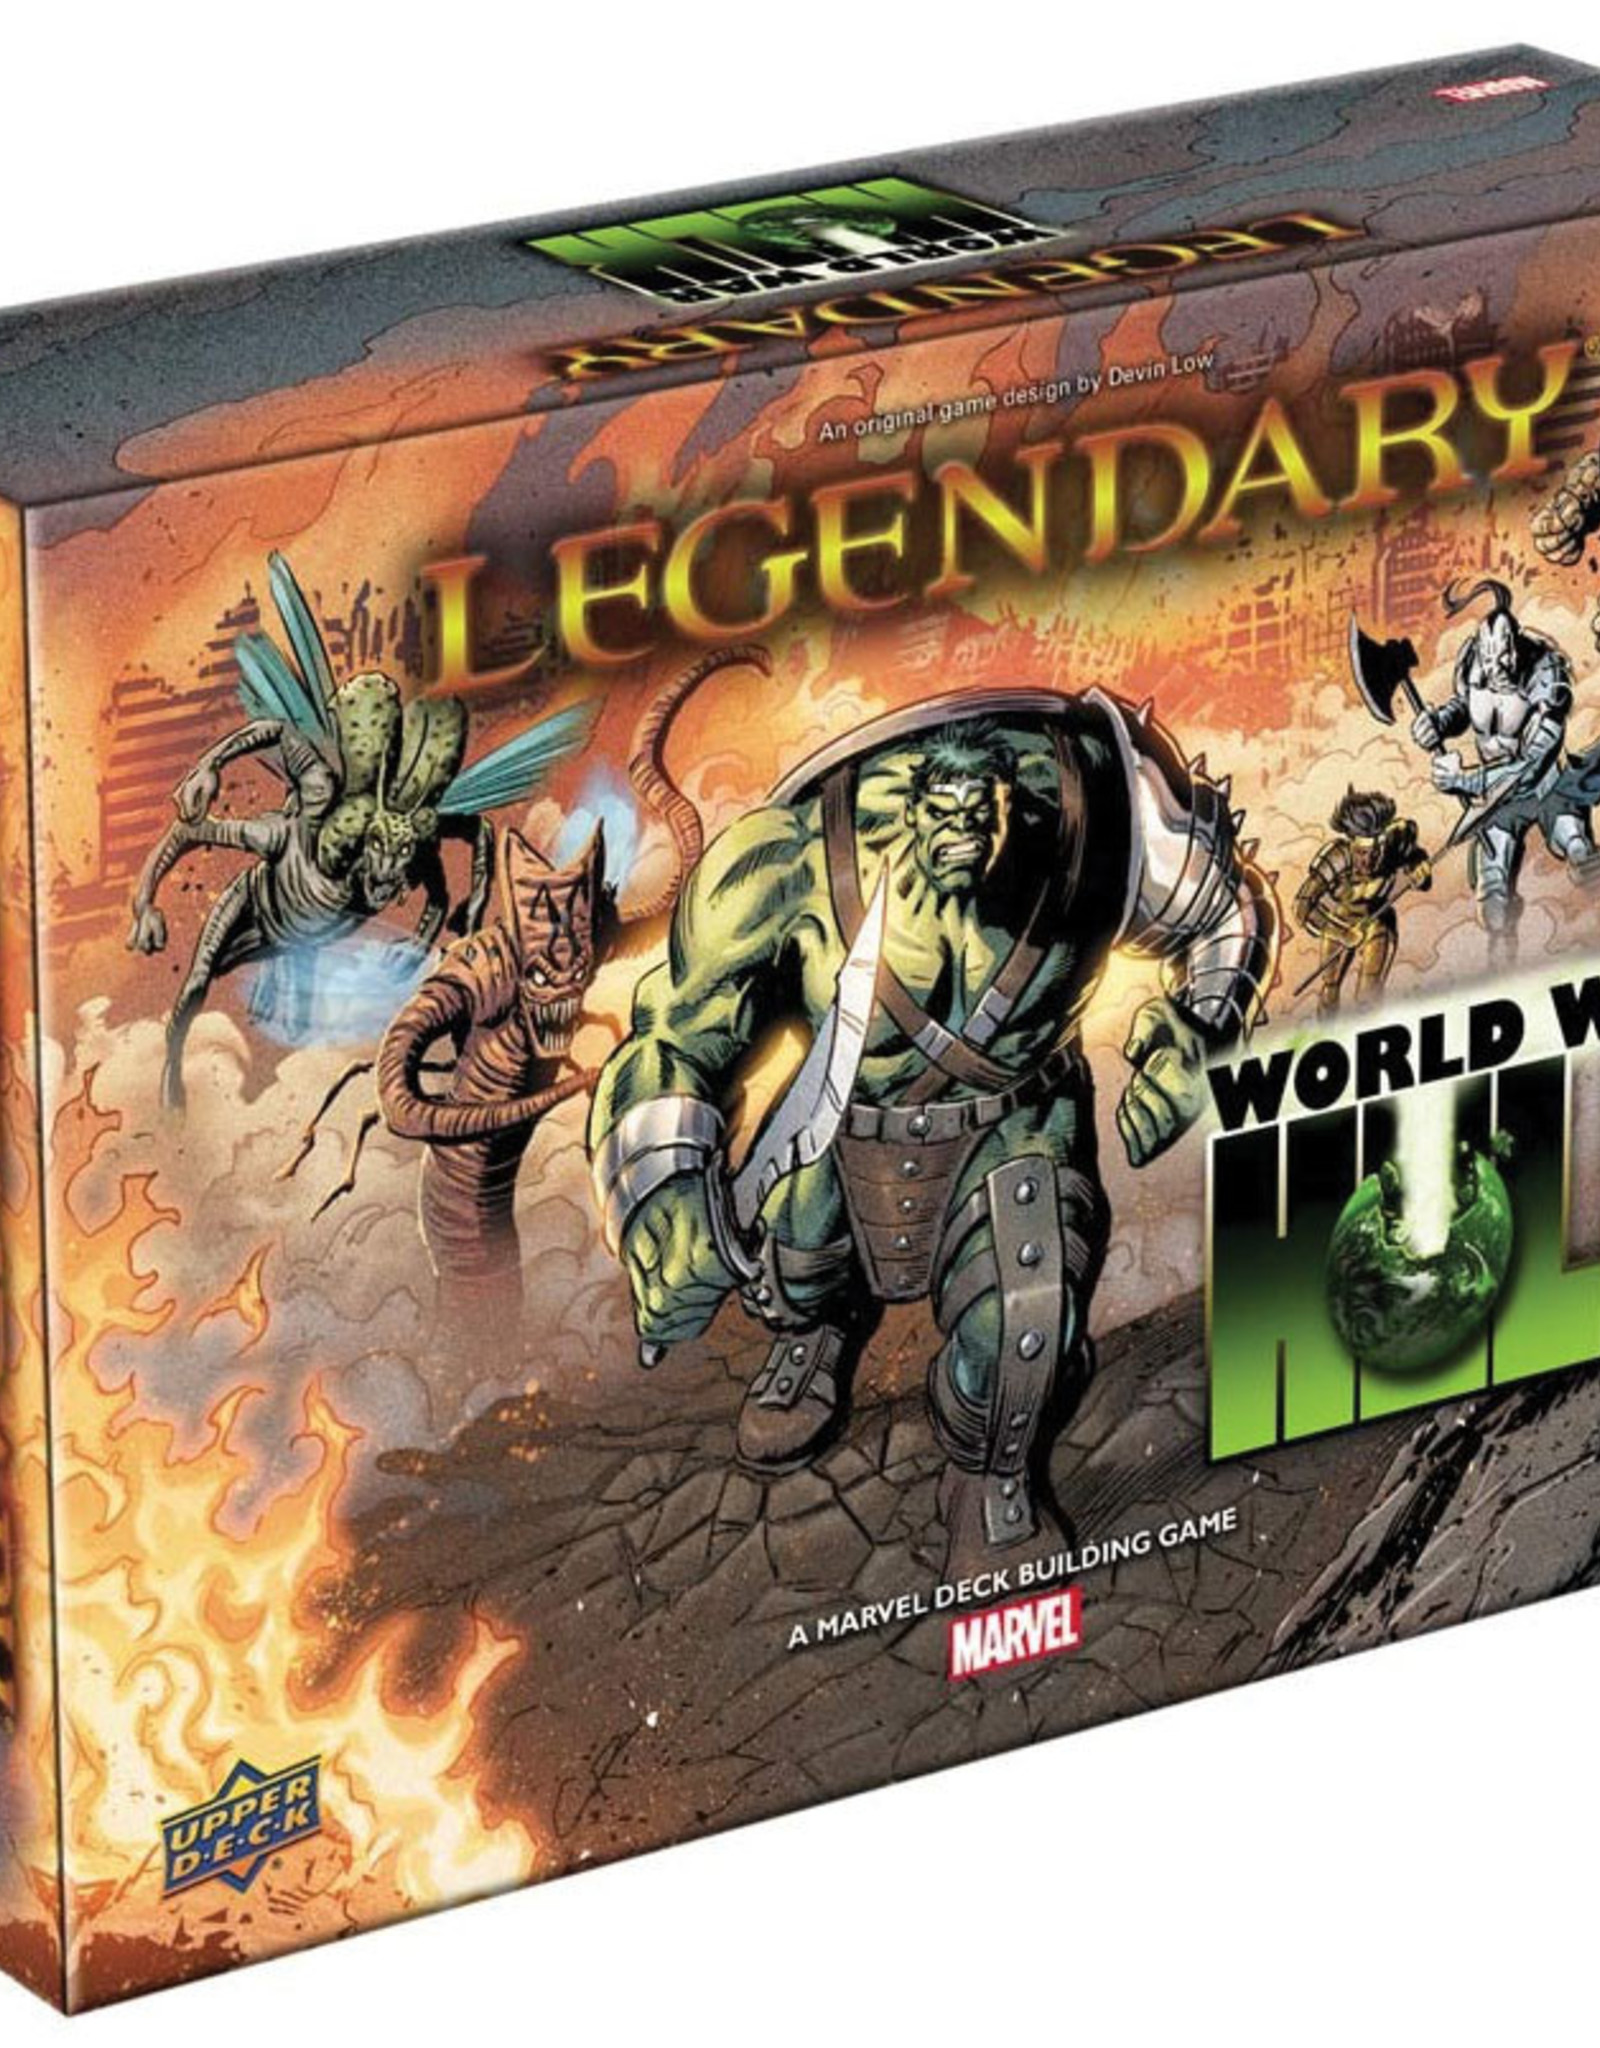 Legendary: World War Hulk